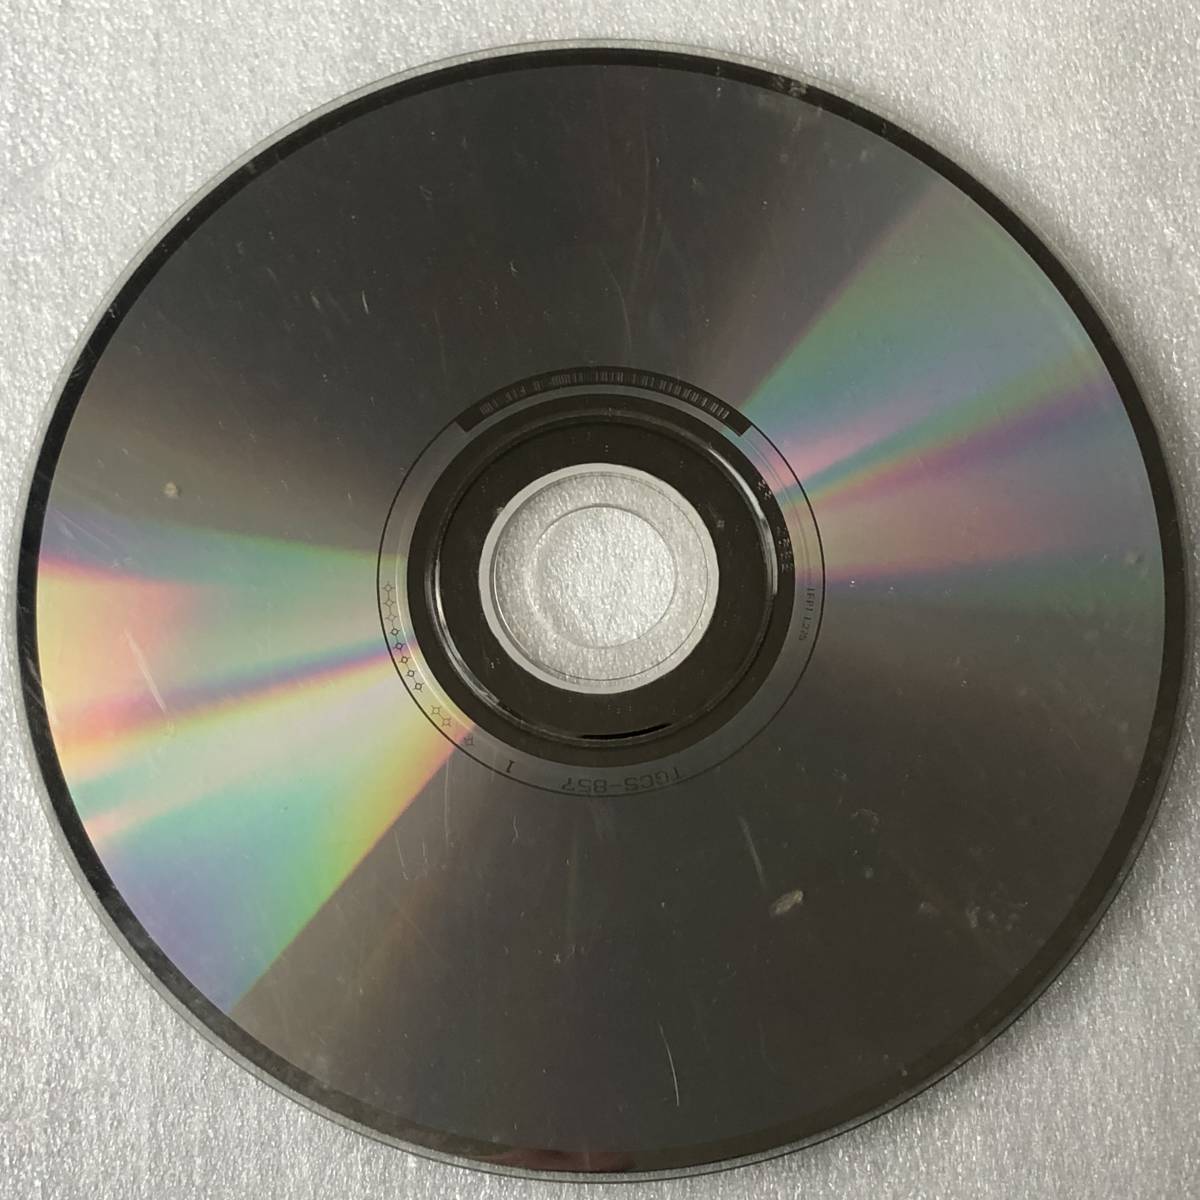 特価CD 管理番号0444_このような傷だらけの品は除外しています。